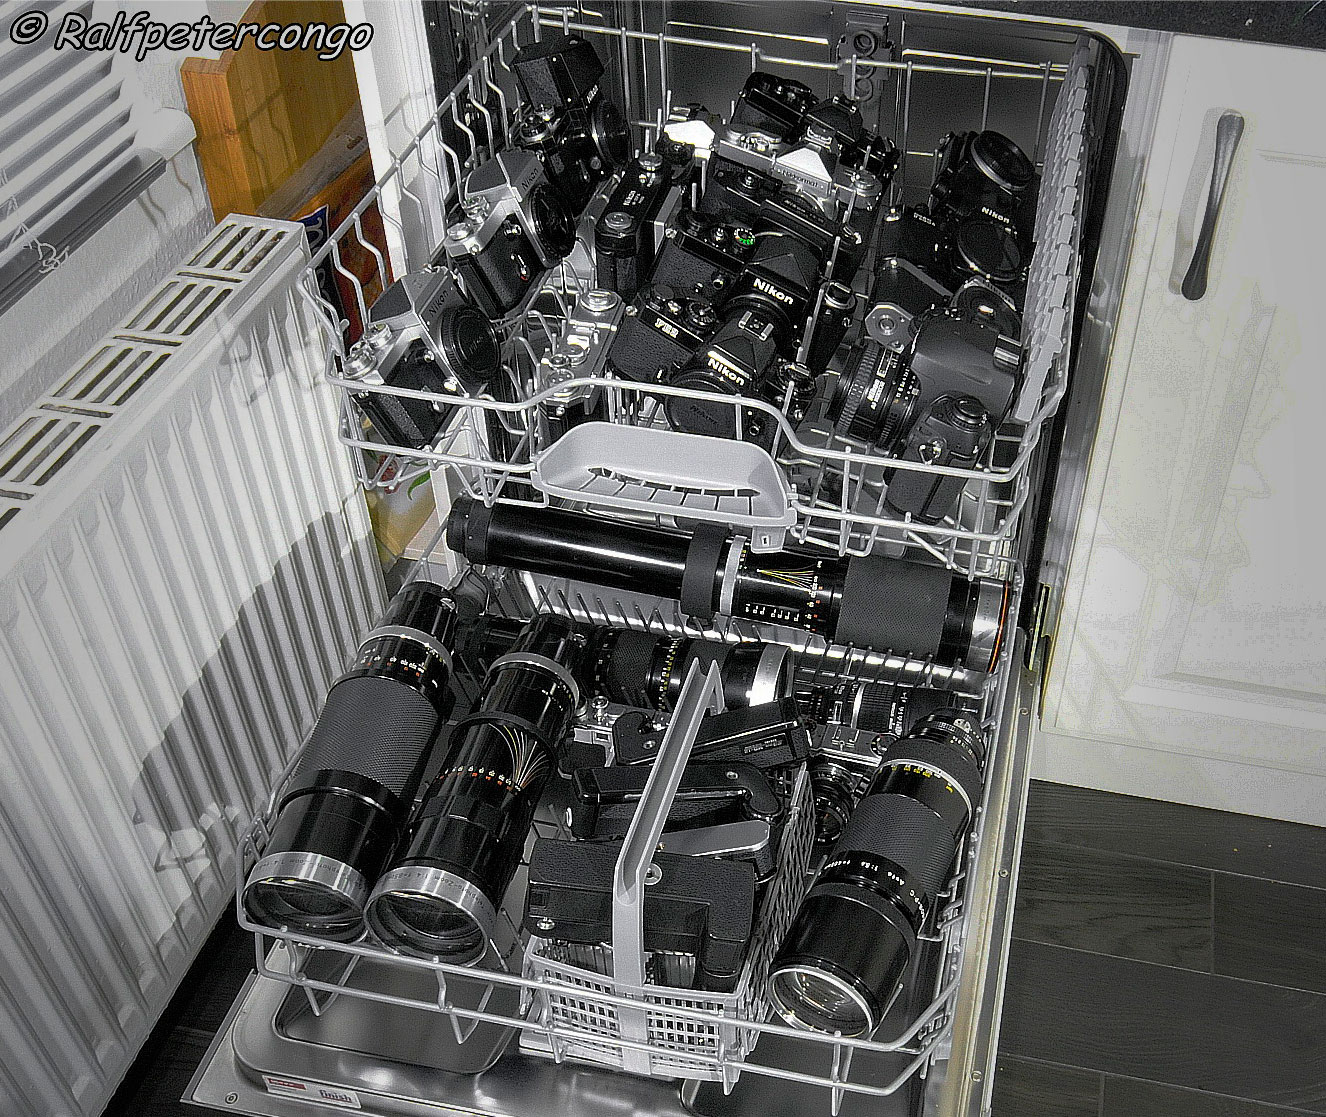 Nikon-camera-cleaning-dishwasher.jpg